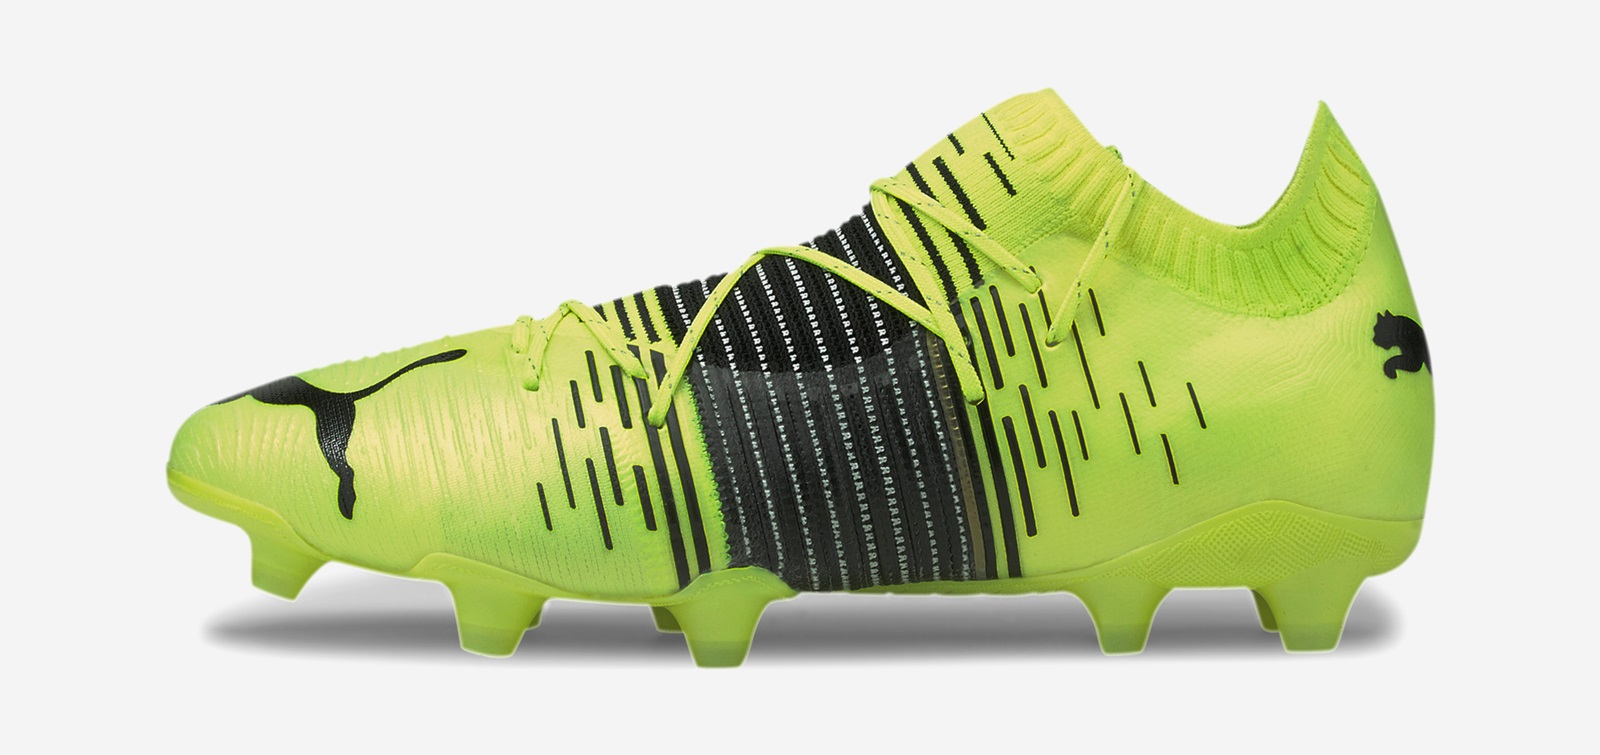 neymar soccer boots 2020